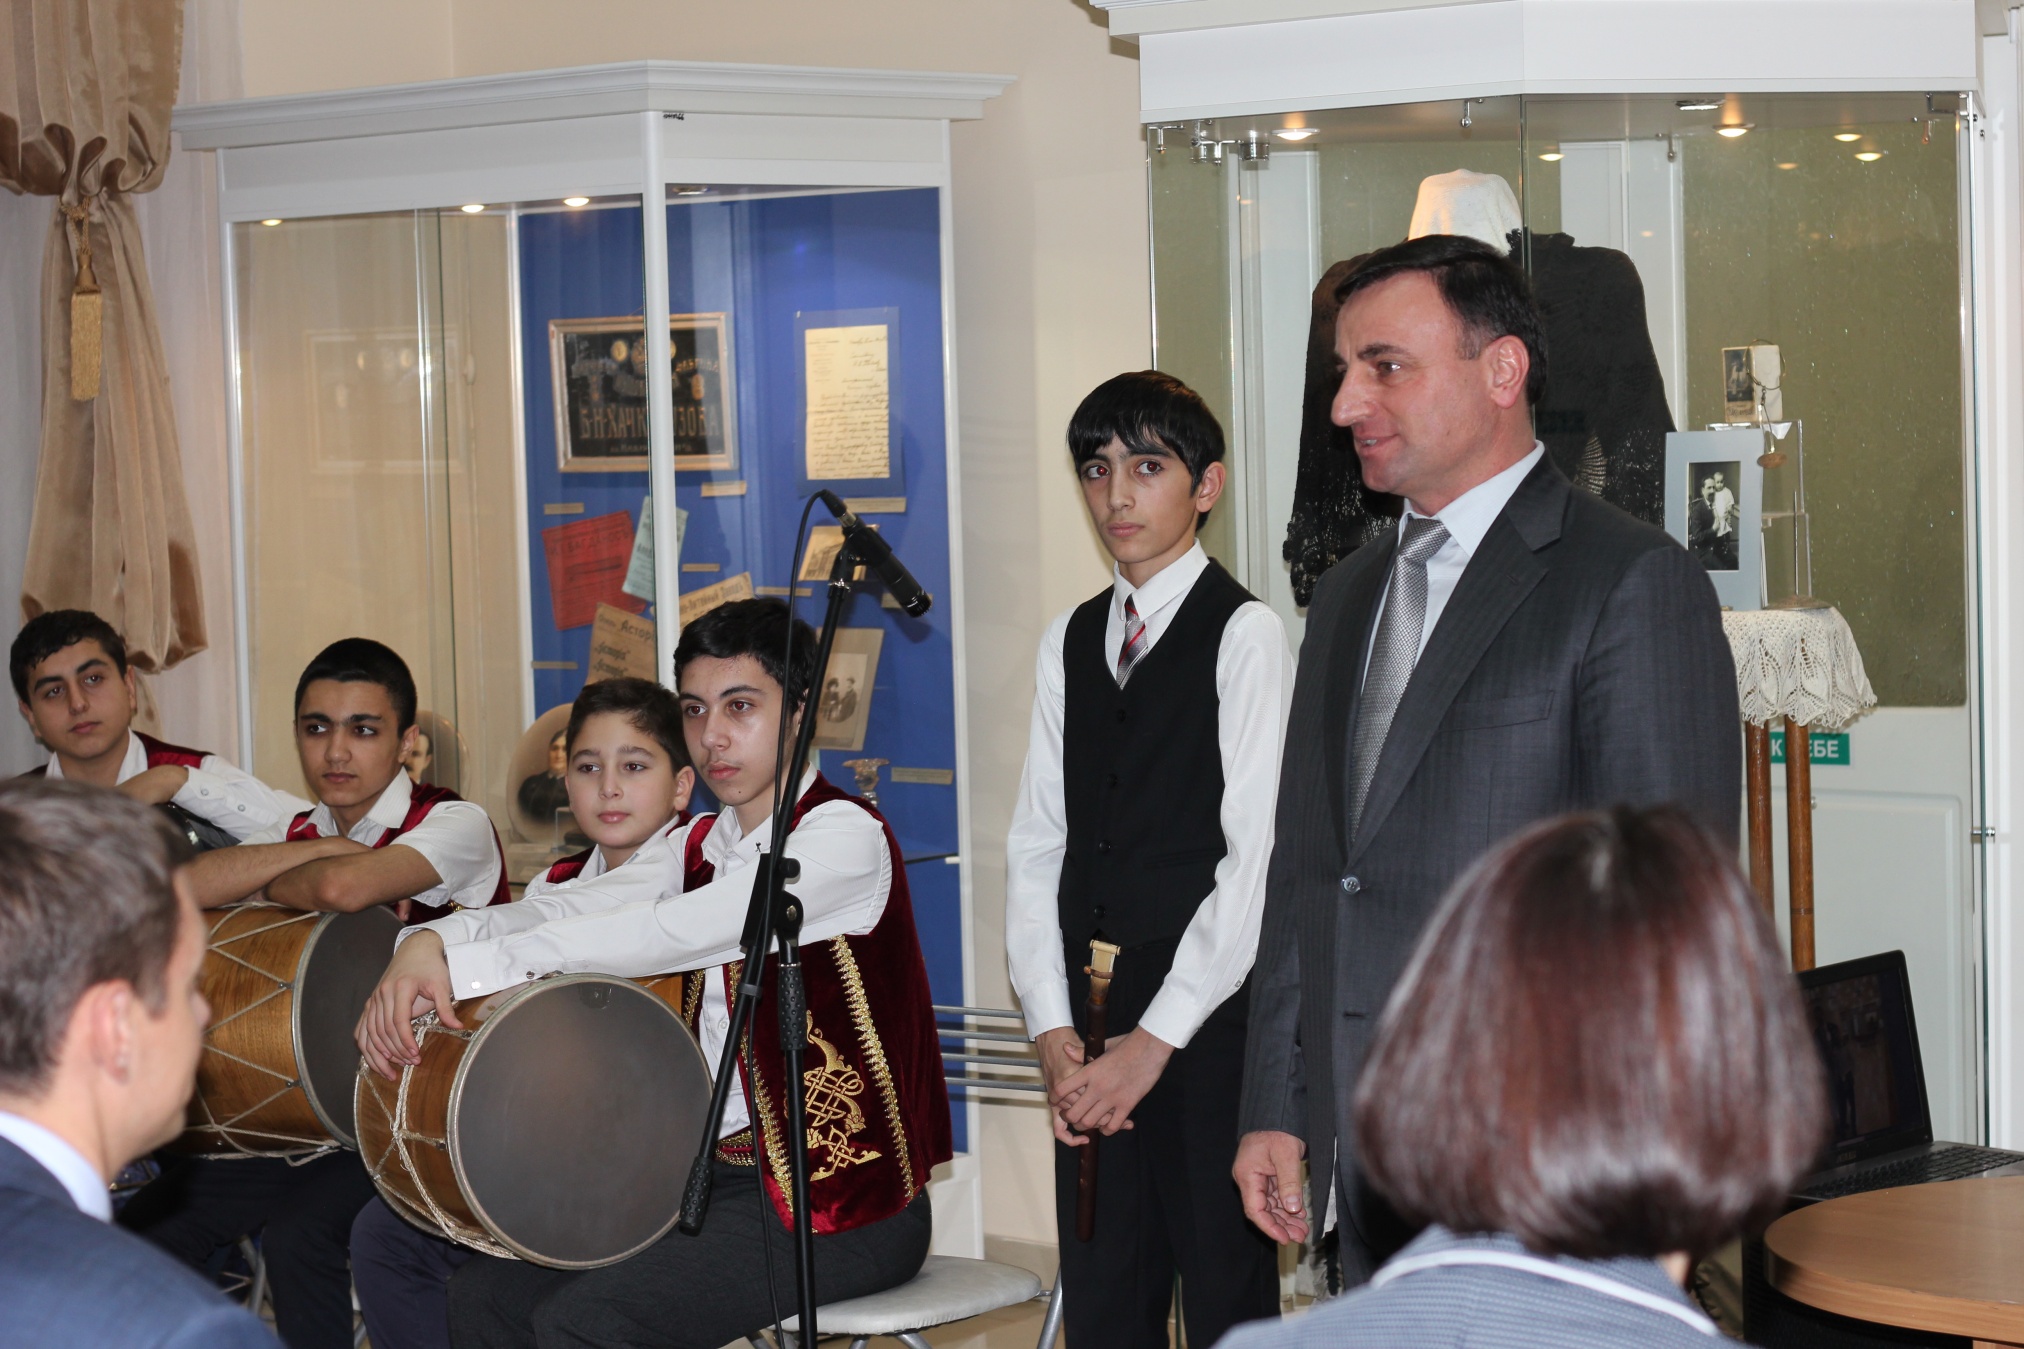 Приветствие гостей председателем Ново-Нахичеванской армянской общины Сурмаляном А.А. на 45-летии Музея русско-армянской дружбы